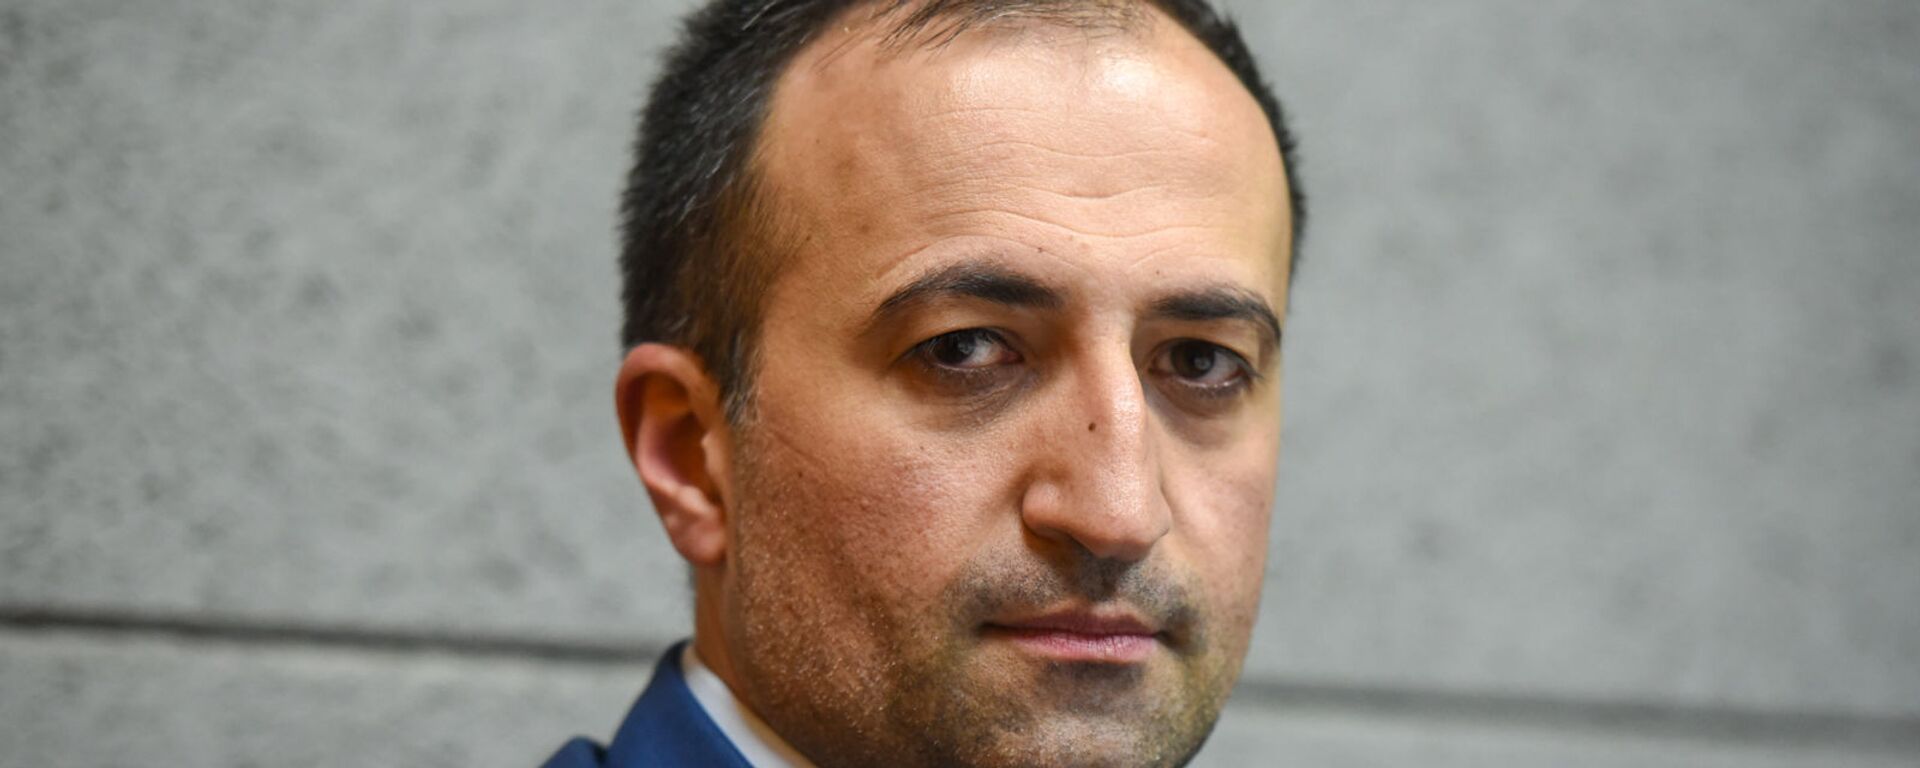 Руководитель аппарата премьер-министра Армении Арсен Торосян в гостях радио Sputnik - Sputnik Արմենիա, 1920, 18.05.2021